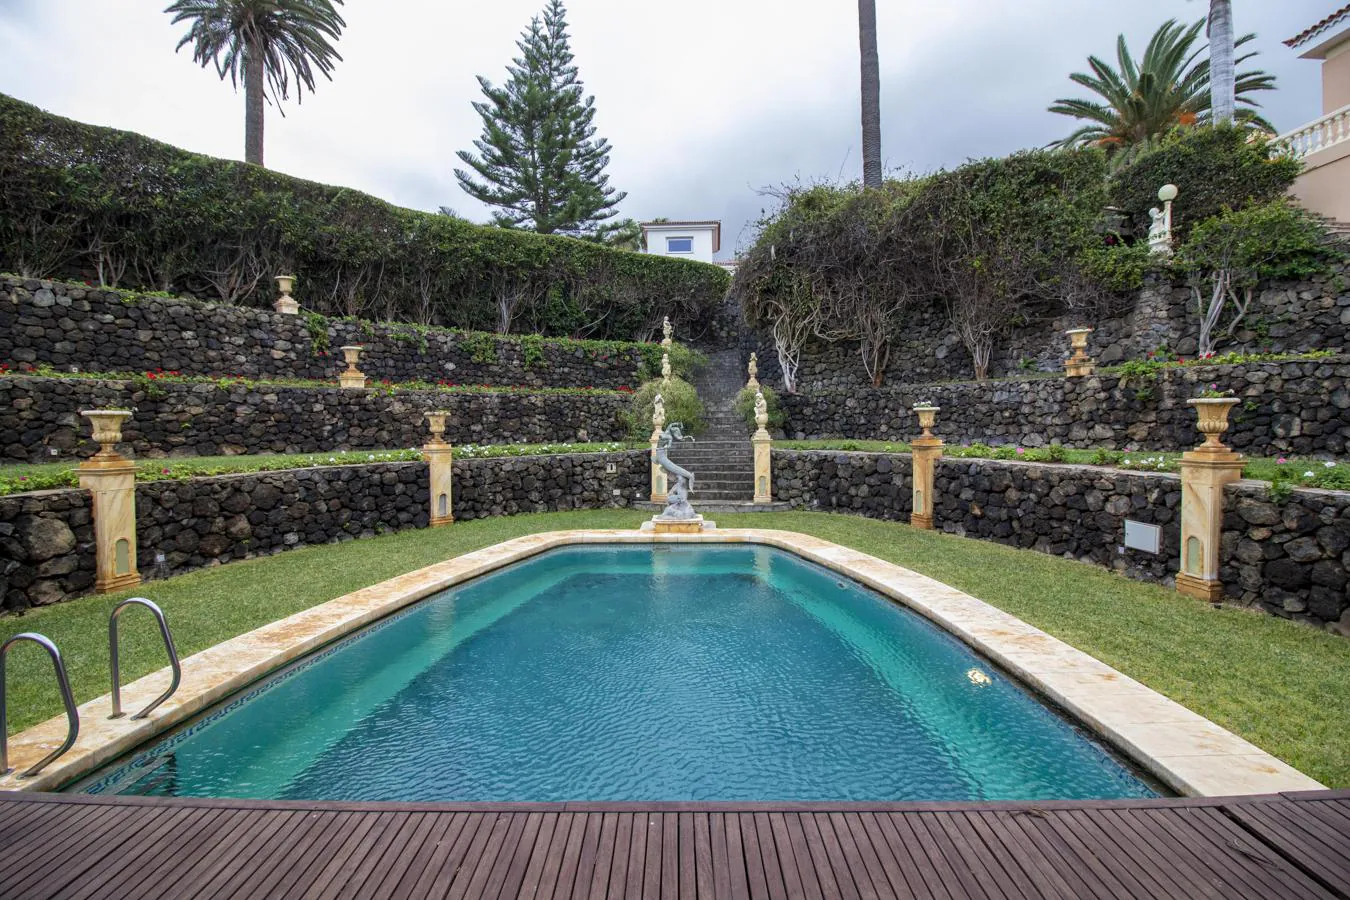 El palacete más lujoso de Tenerife busca dueño. El jardín está pensado para poder pasar horas y horas en él cómodamente. Posee varios cenadores, barbacoa y como no podía ser menos tiene una majestuosa piscina XXL rodeada de una frondosa vegetación.